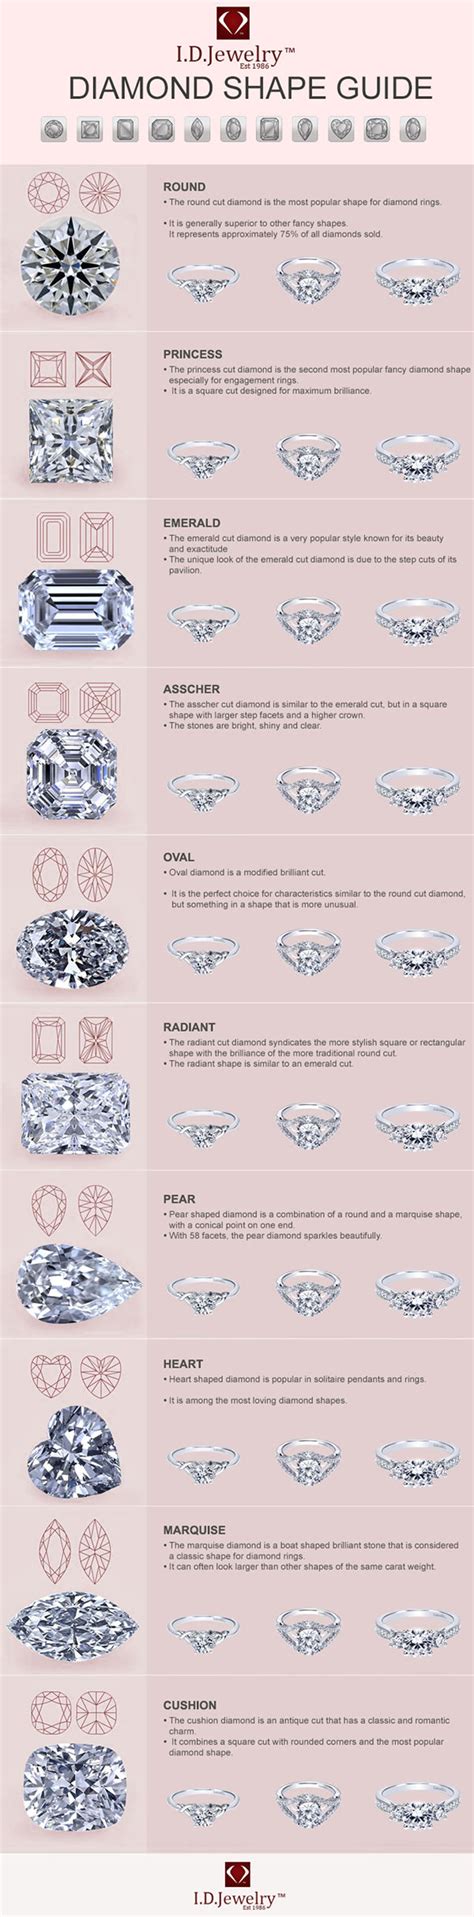 Diamond Cut Shapes Chart